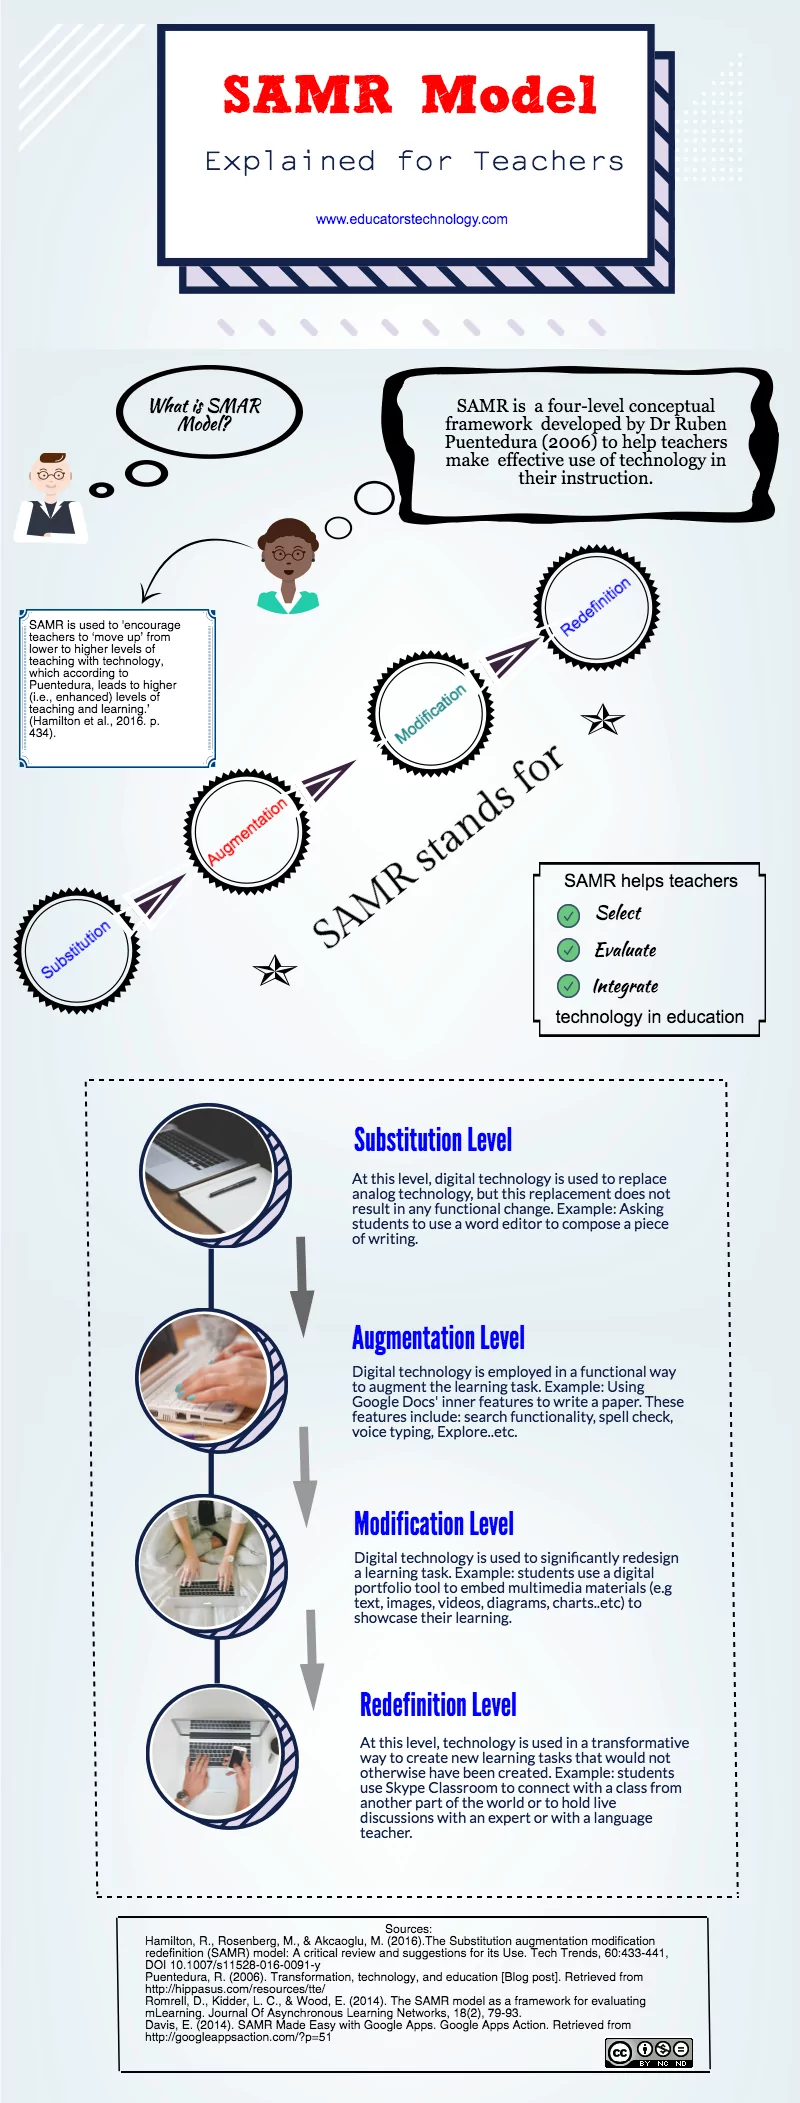 A Handy Infographic Explaining SAMR Model for Teachers